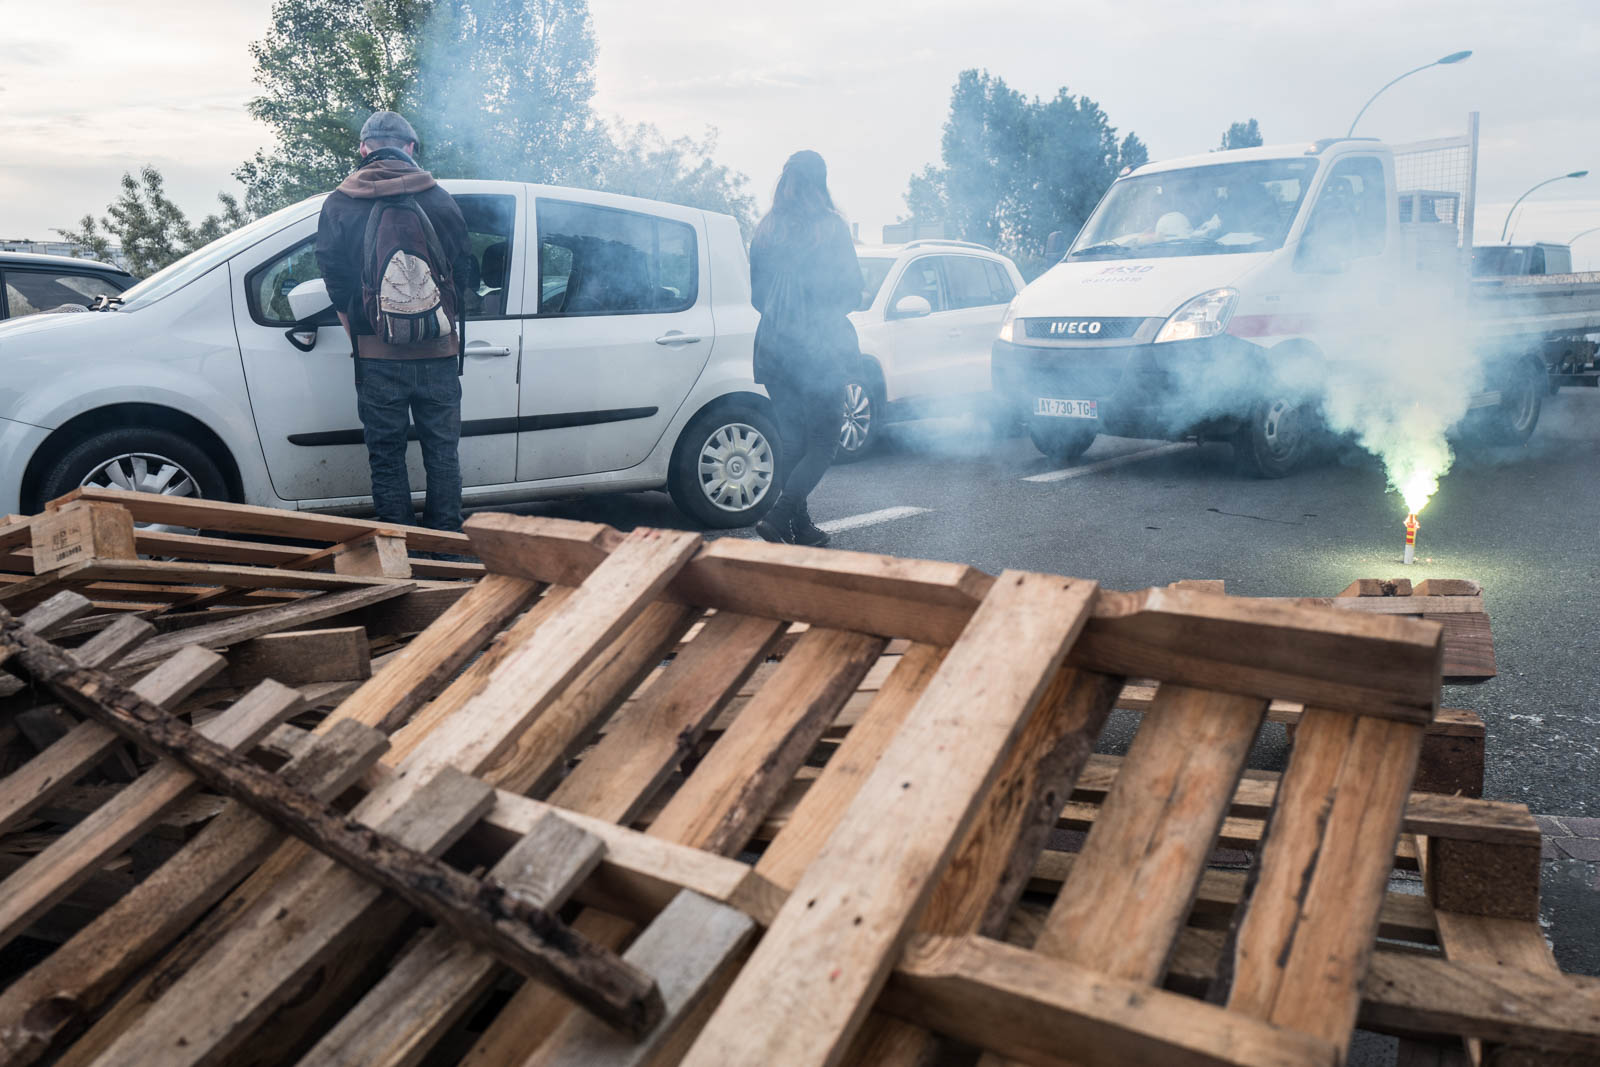 Très tôt le matin, plusieurs dizaines de manifestants, notamment du mouvement Nuit Debout, ont effectué des barrages filtrants aux sorties de rocade comme ici à Balma-Gramont pour dénoncer la loi Travail voulue par le gouvernement de Manuel Valls et de sa ministre du travail Myriam El-Khomri. De nombreux ralentissements et bouchons ont été enregistré alors que devait se tenir la grande manifestation à l’appel de l’intersyndicale dans l’après-midi. Toulouse, France-26 mai 2016.